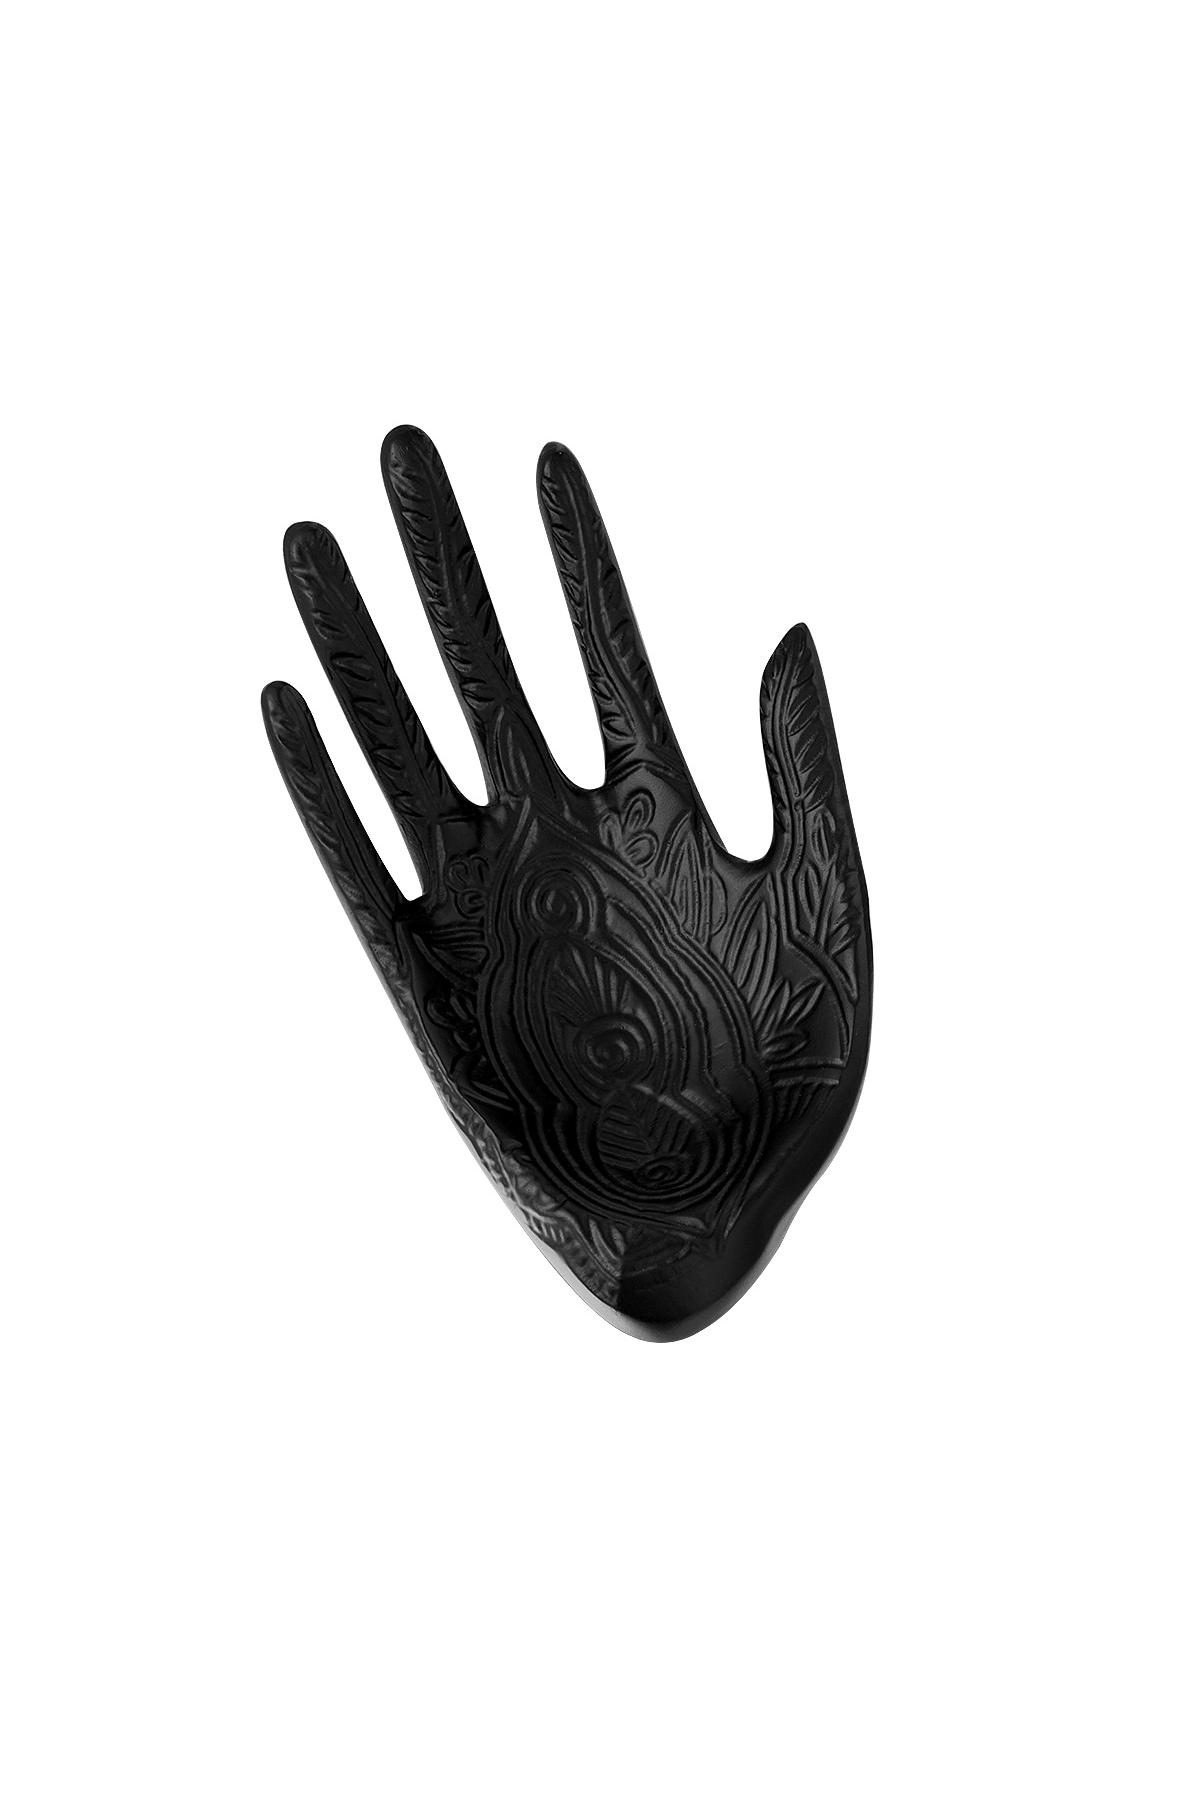 Oyulmuş desenli dekoratif mücevher tepsisi eli Black Resin 